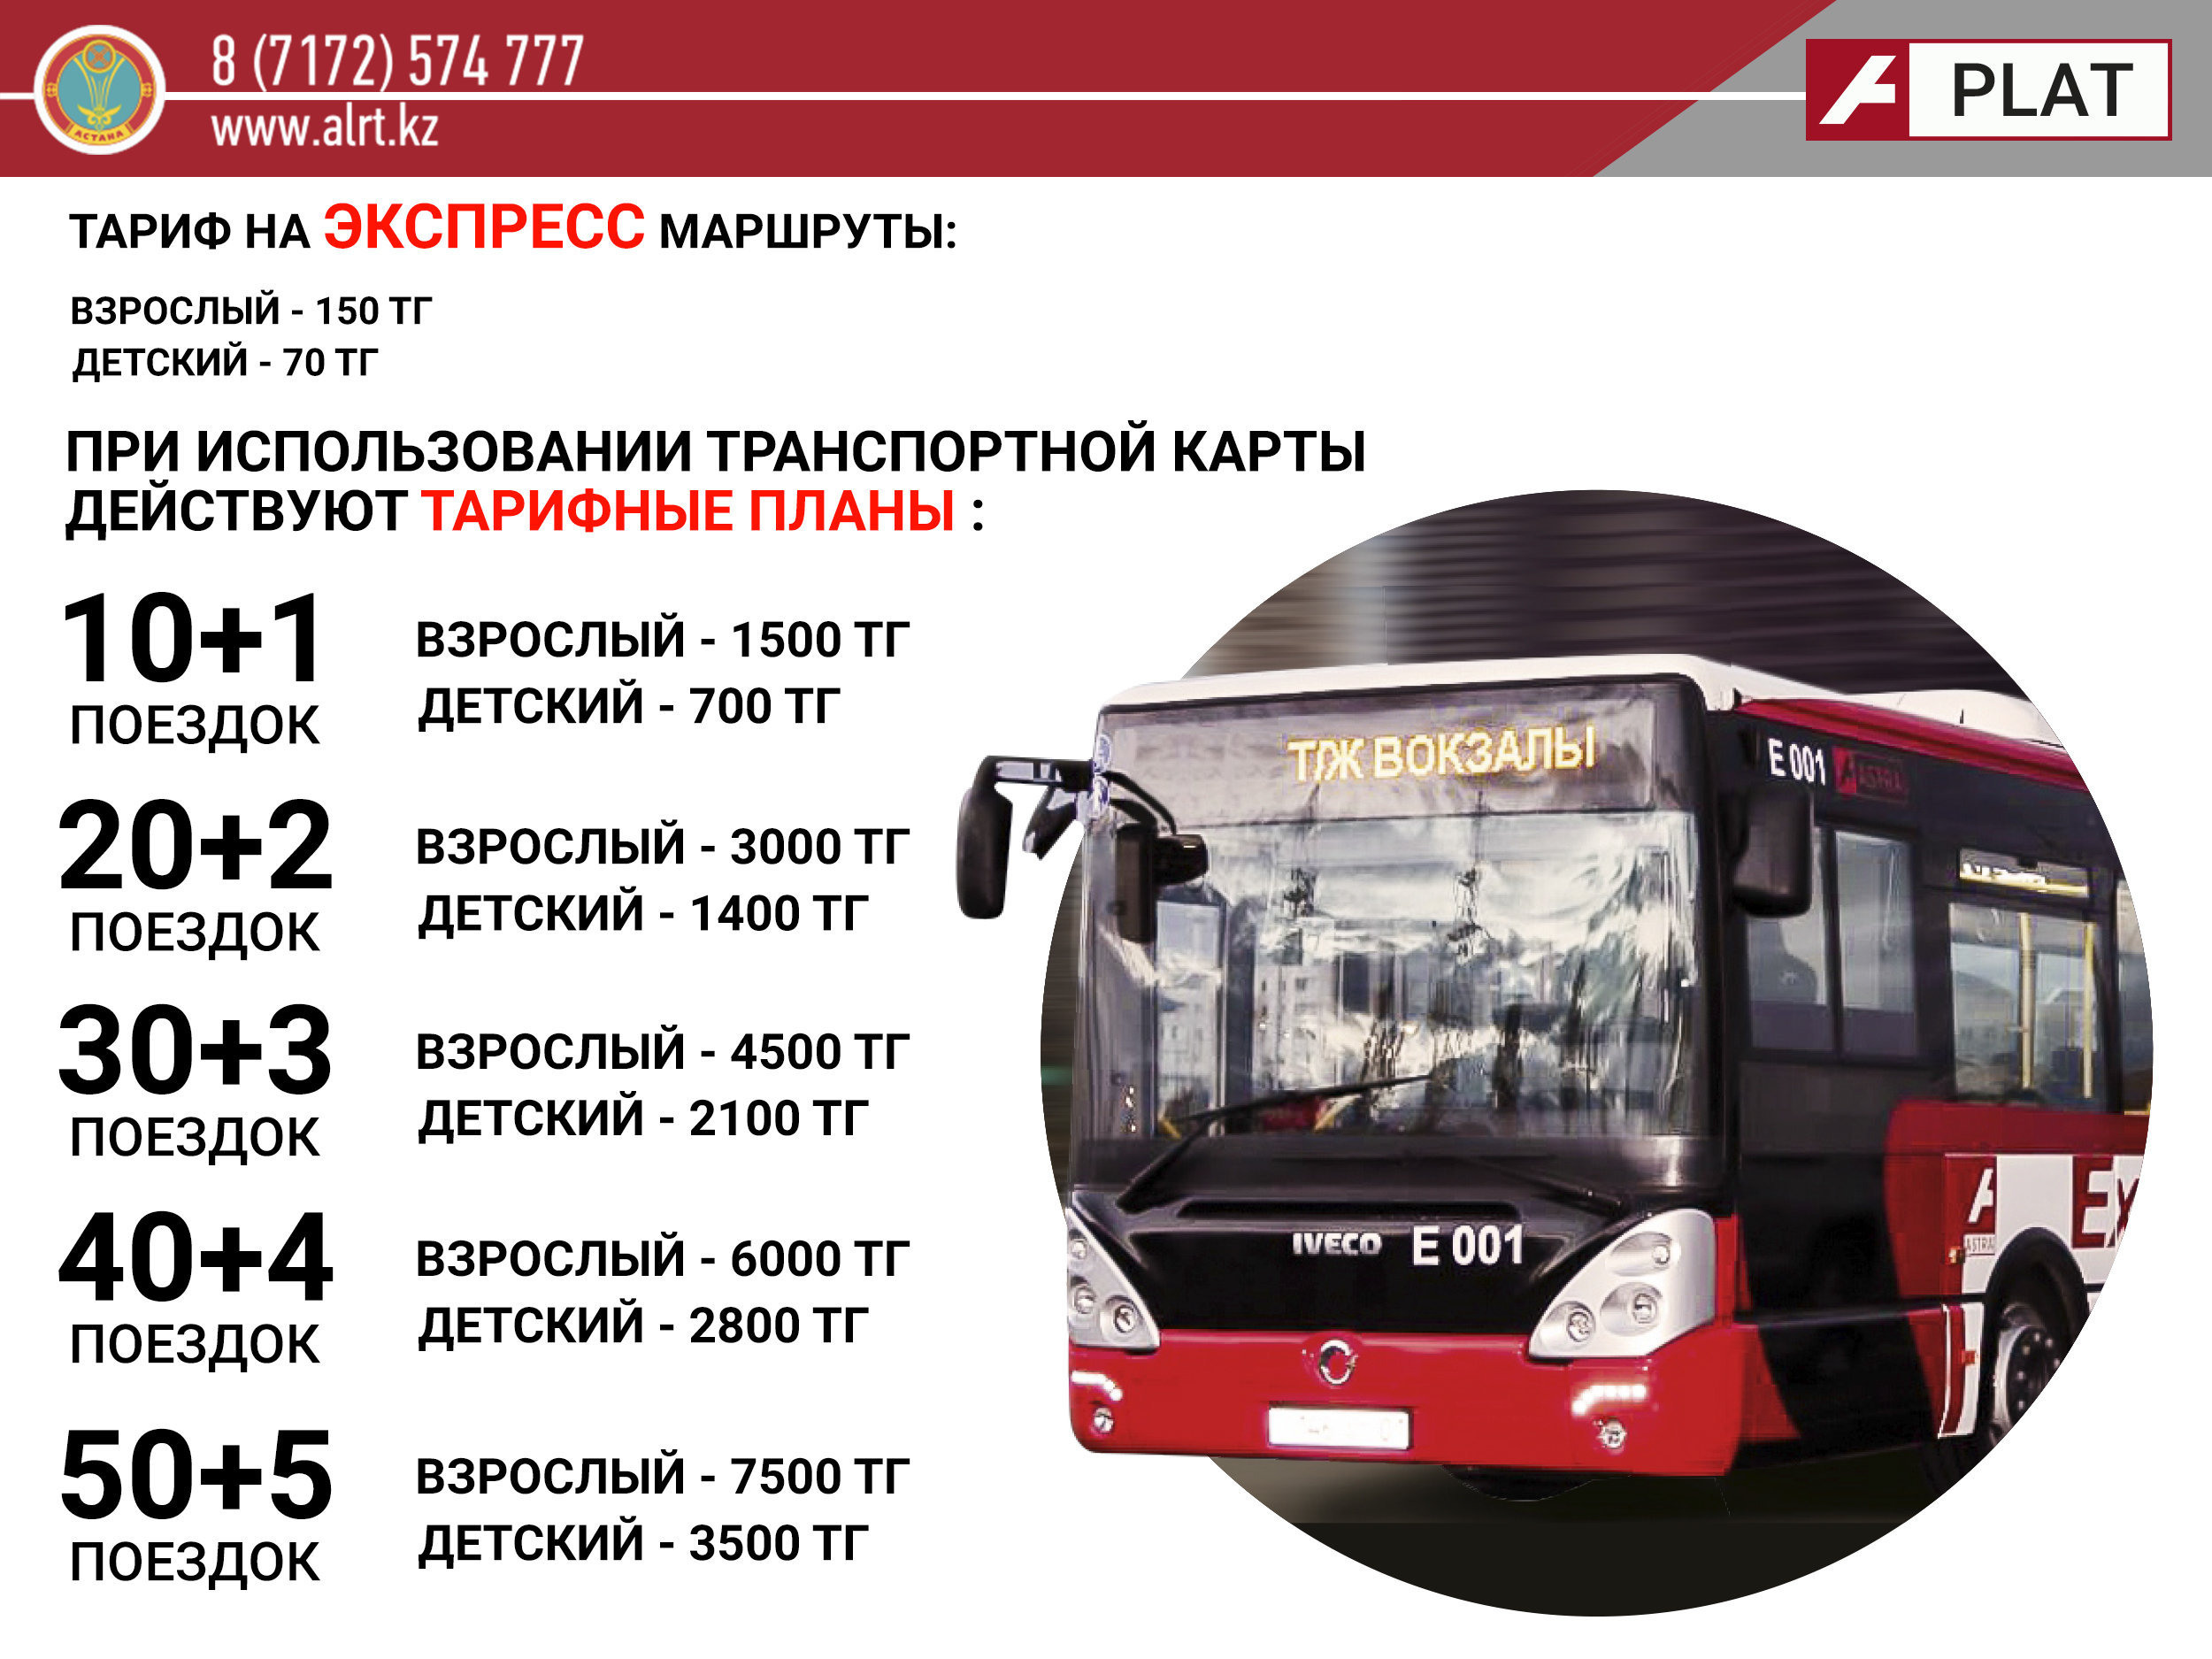 Проезд автобусом астана. Экспресс автобус. Автобусы Астана экспресс. Экспресс маршрут. Транспортная карта Астана.